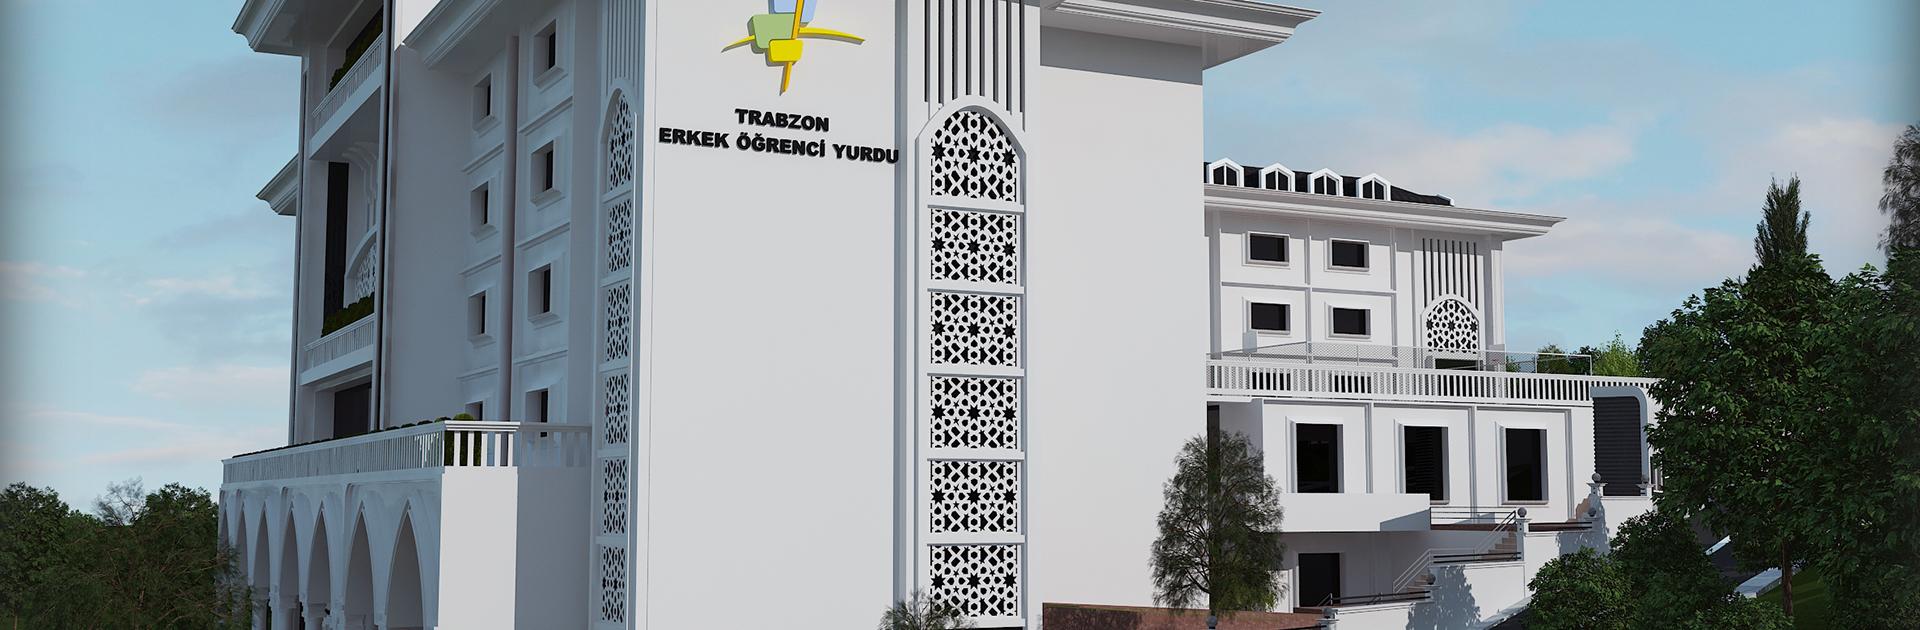 Trabzon Erkek Öğrenci Yurdu Projesi